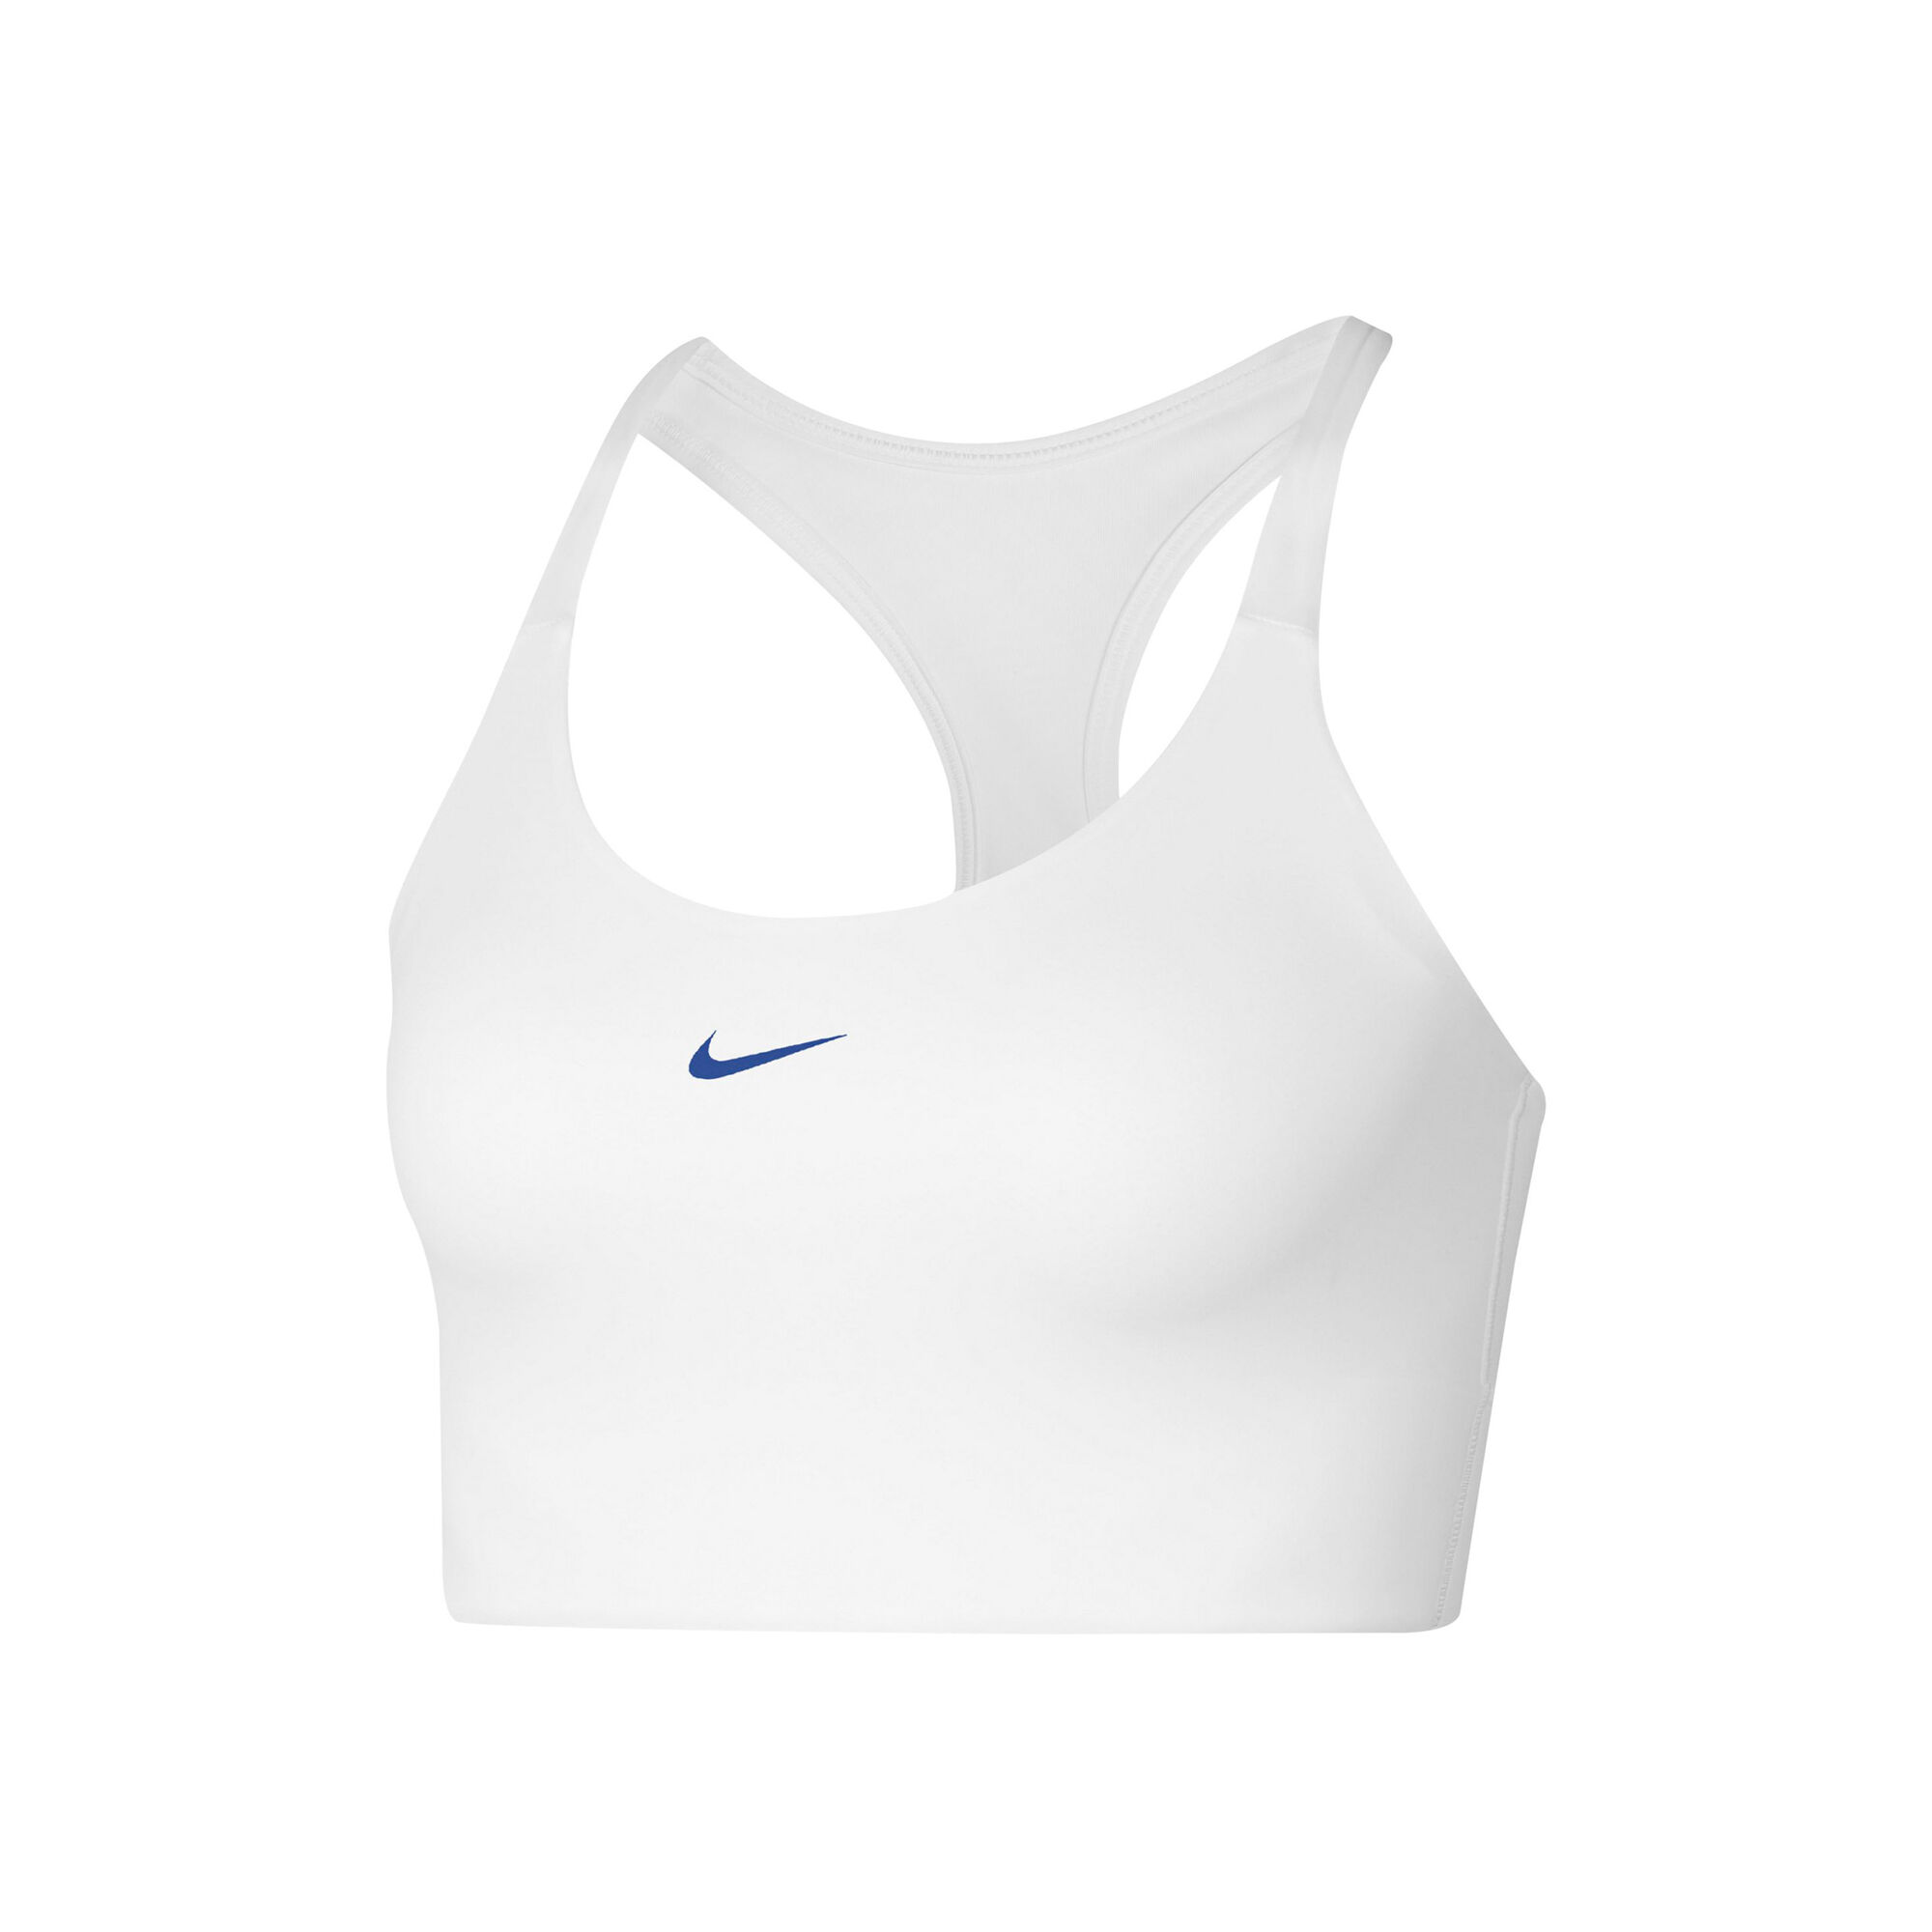 Buy Nike Sports Bras - Women